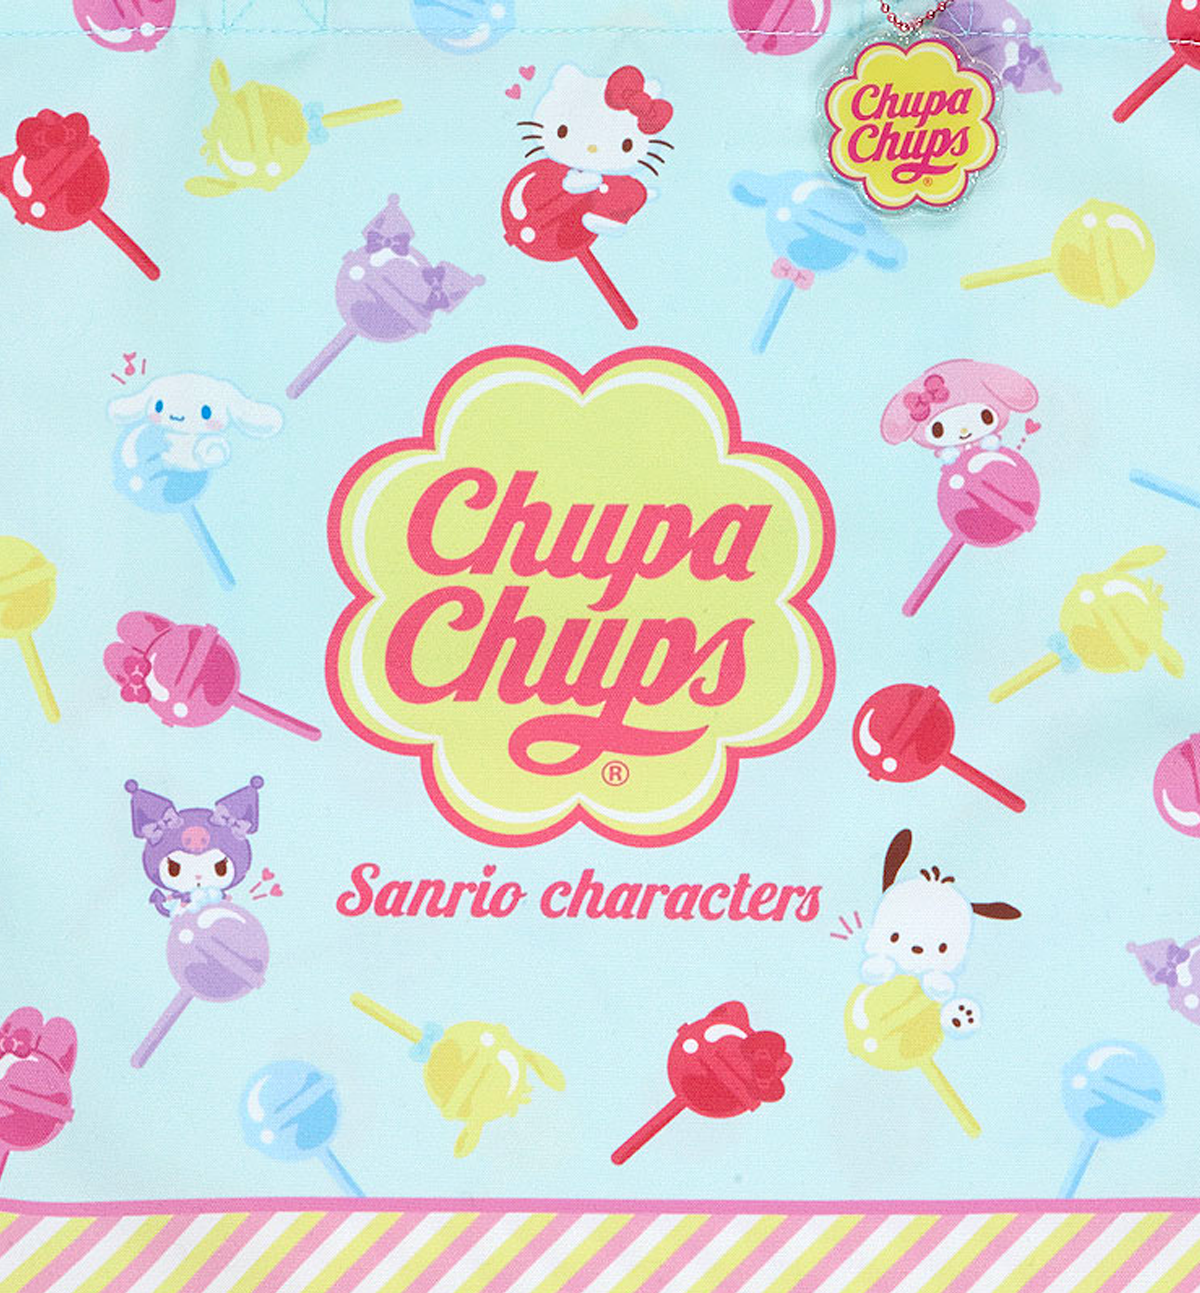 Sanrio Characters & Chupa Chups Tote Bag [Limited Edition]